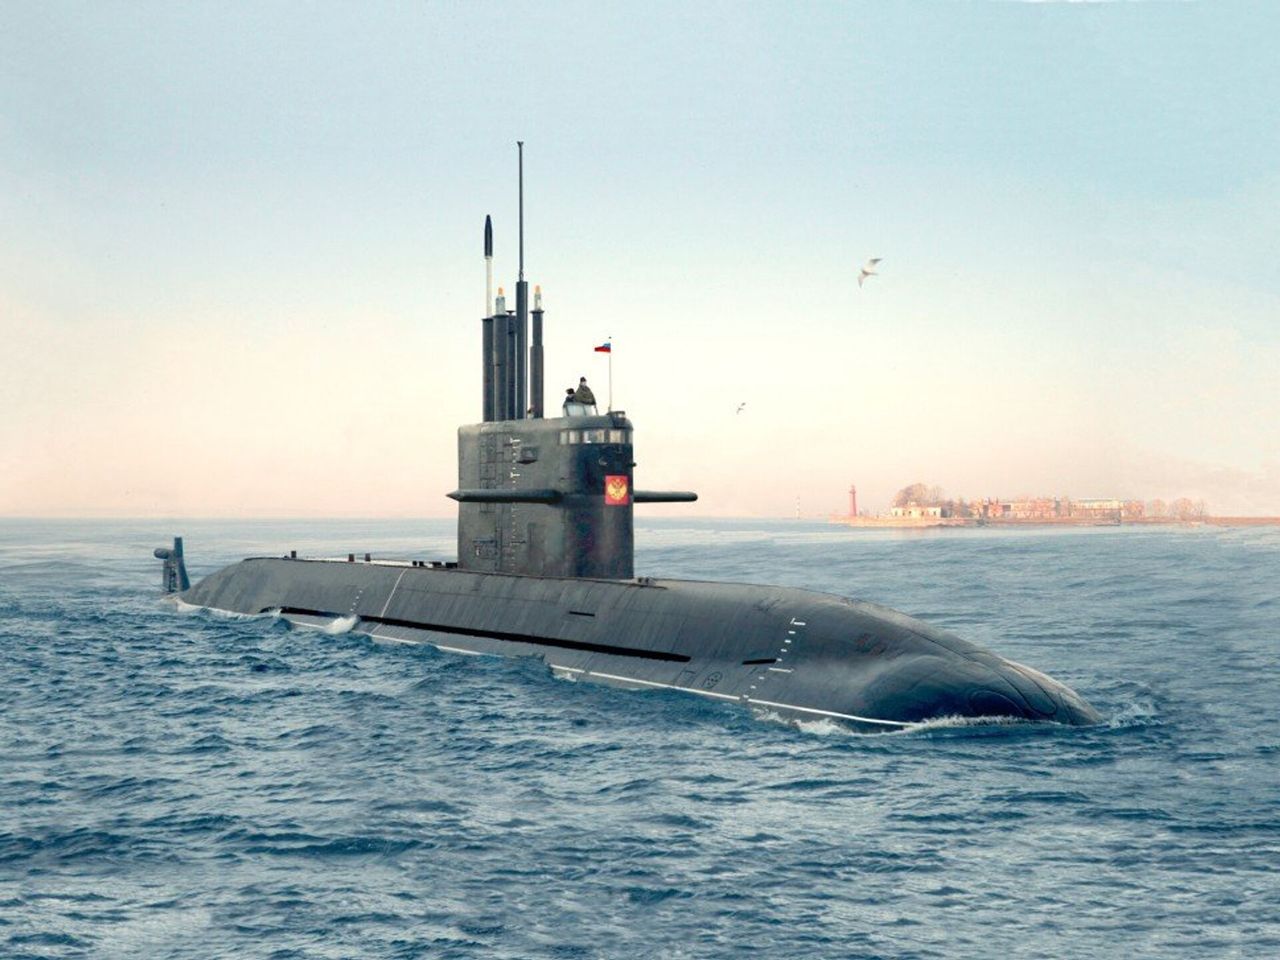 Rosja wprowadziła do służby okręt podwodny "Kronsztad". Budowała go blisko dwie dekady